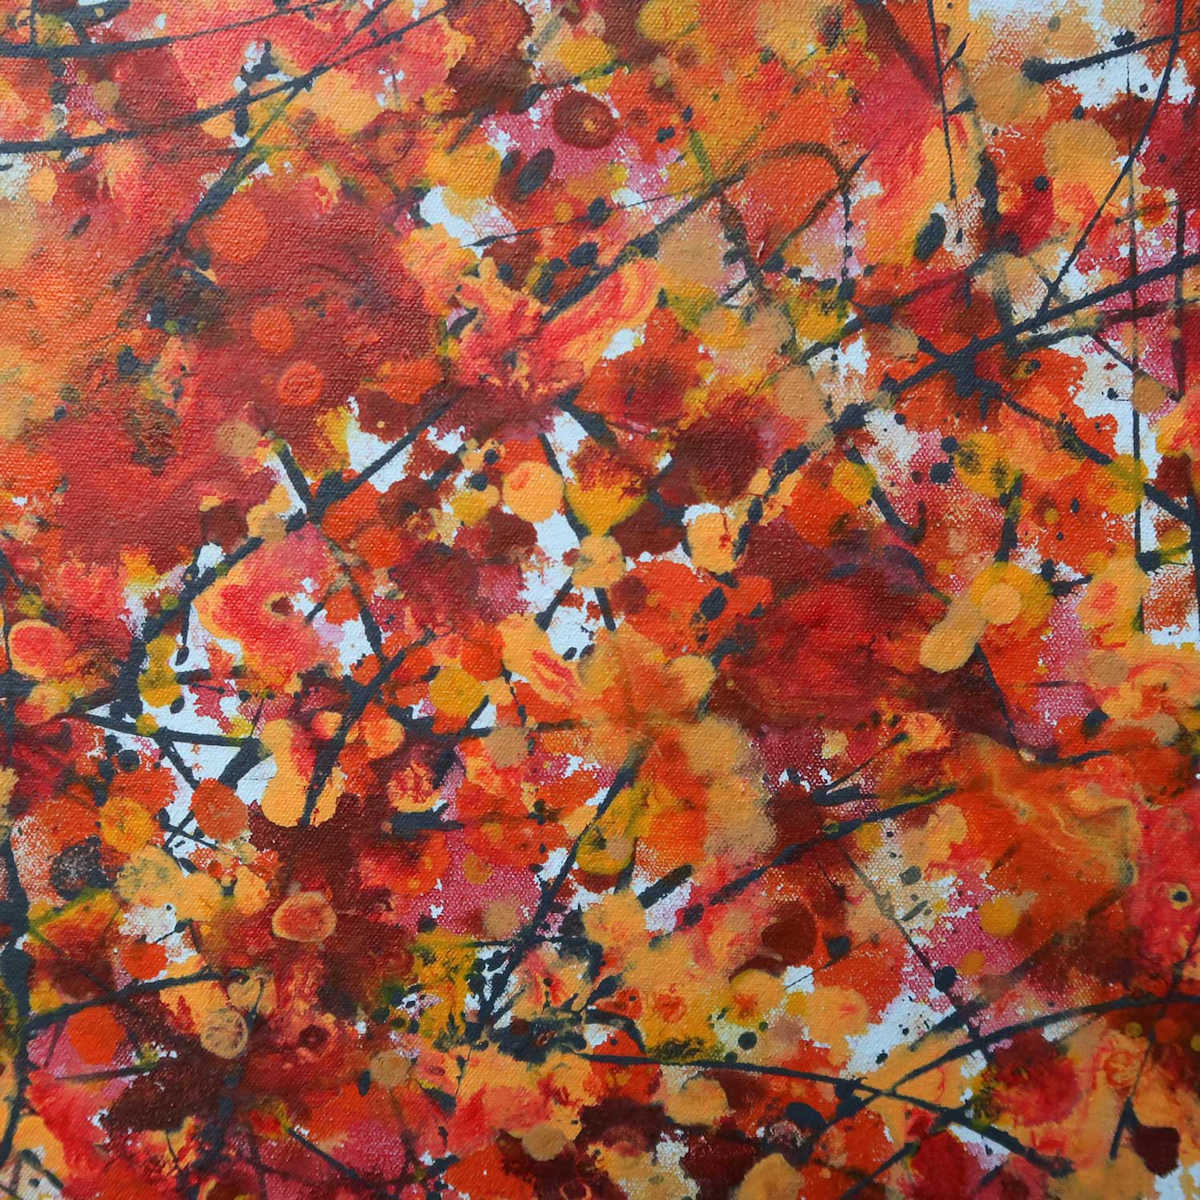 Autumn painting